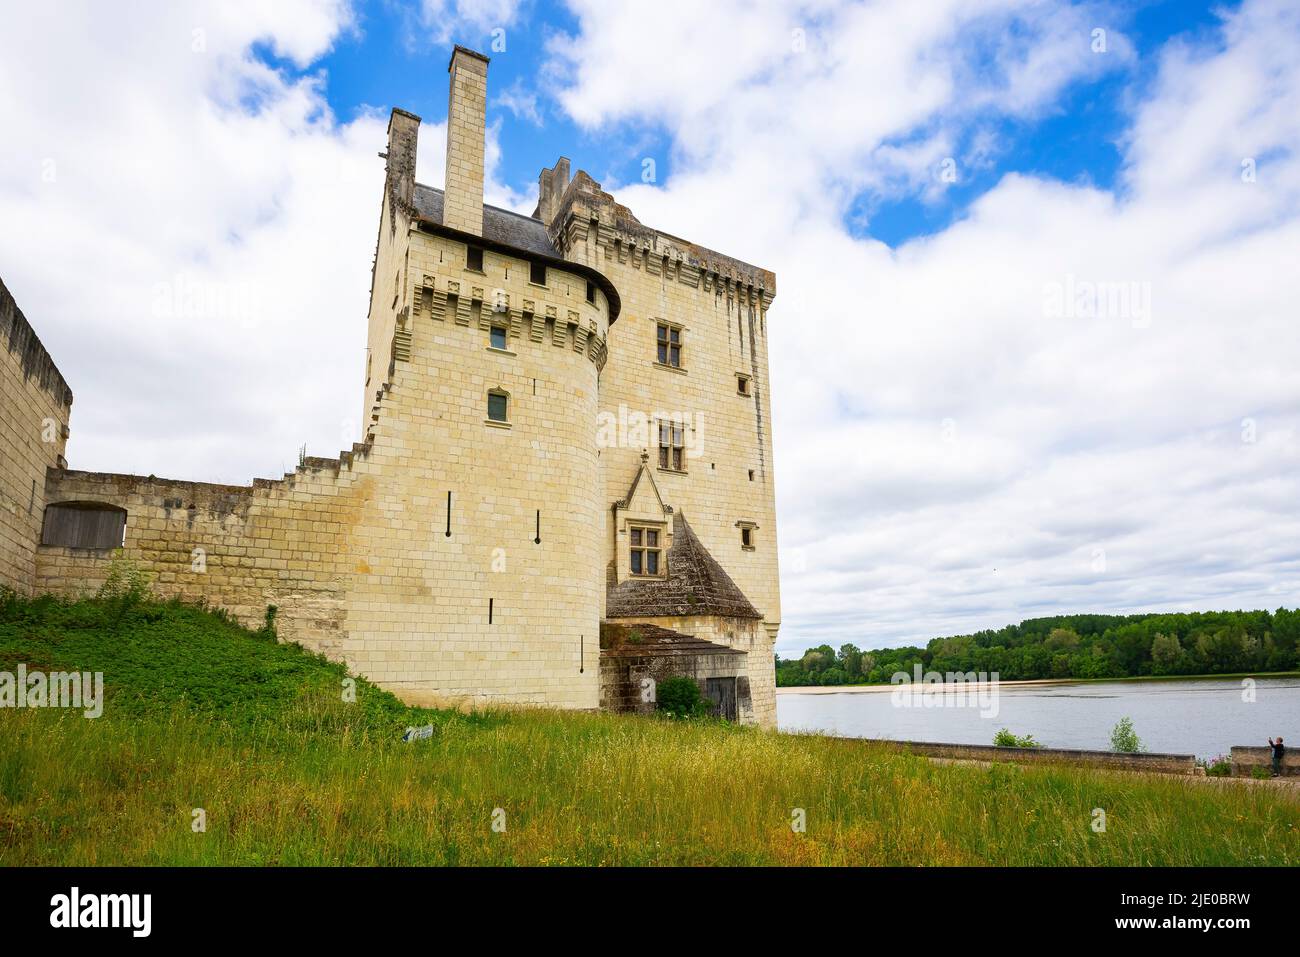 The Château de Montsoreau is a late Gothic style castle  built in the Loire riverbed. It is located in market town of Montsoreau. Maine-et-Loire dépar Stock Photo